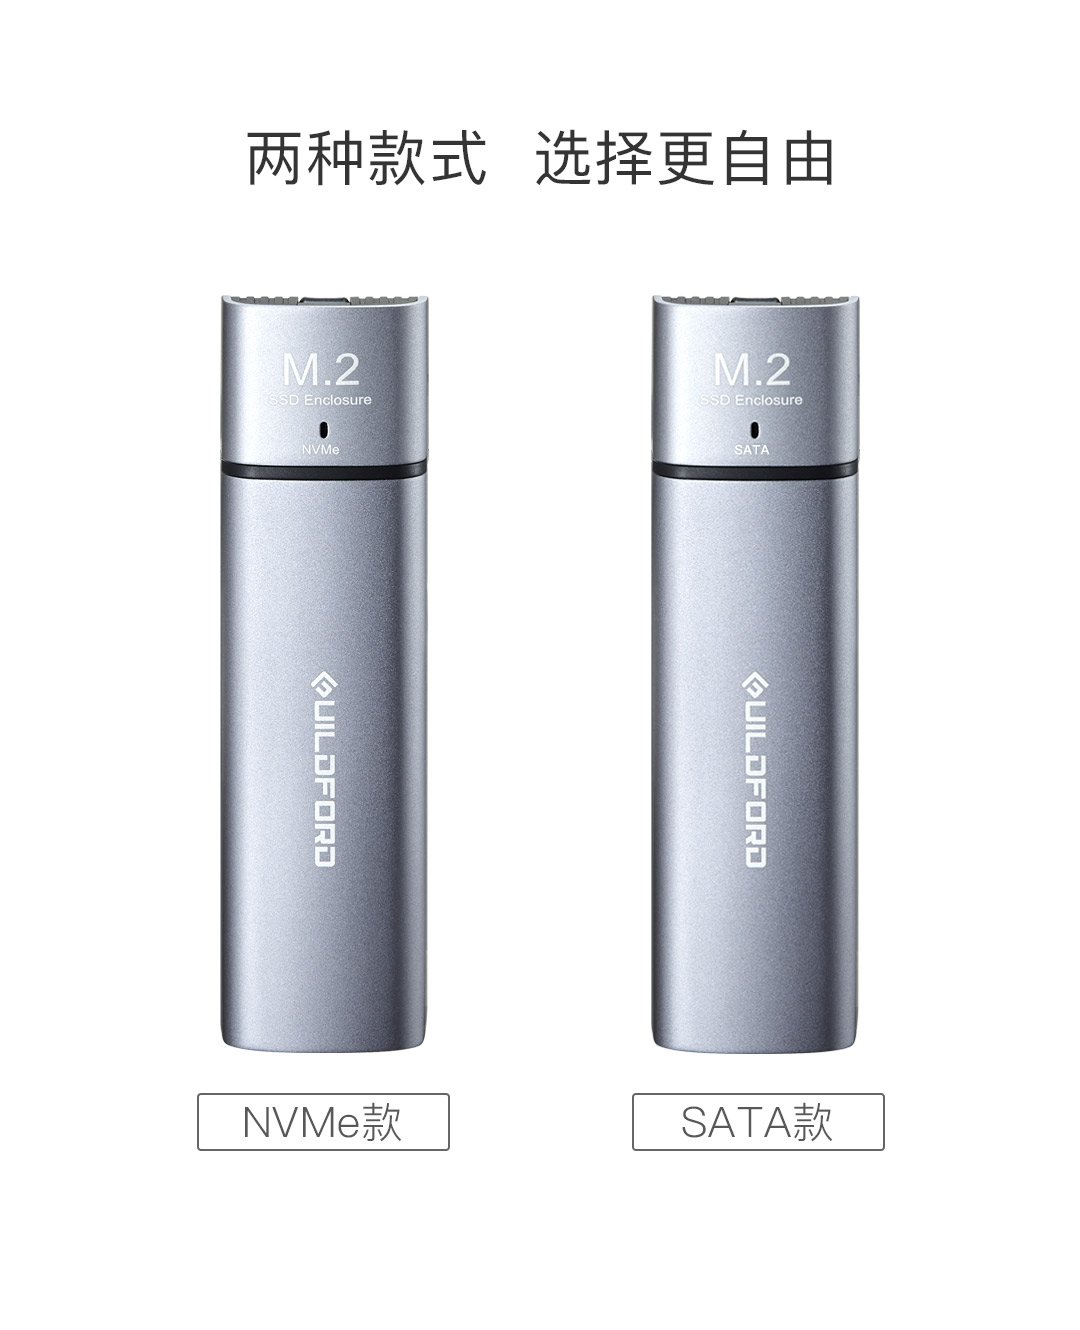 Xiaomi выпустила корпус для использования SSD M.2 в роли внешних USB-накопителей